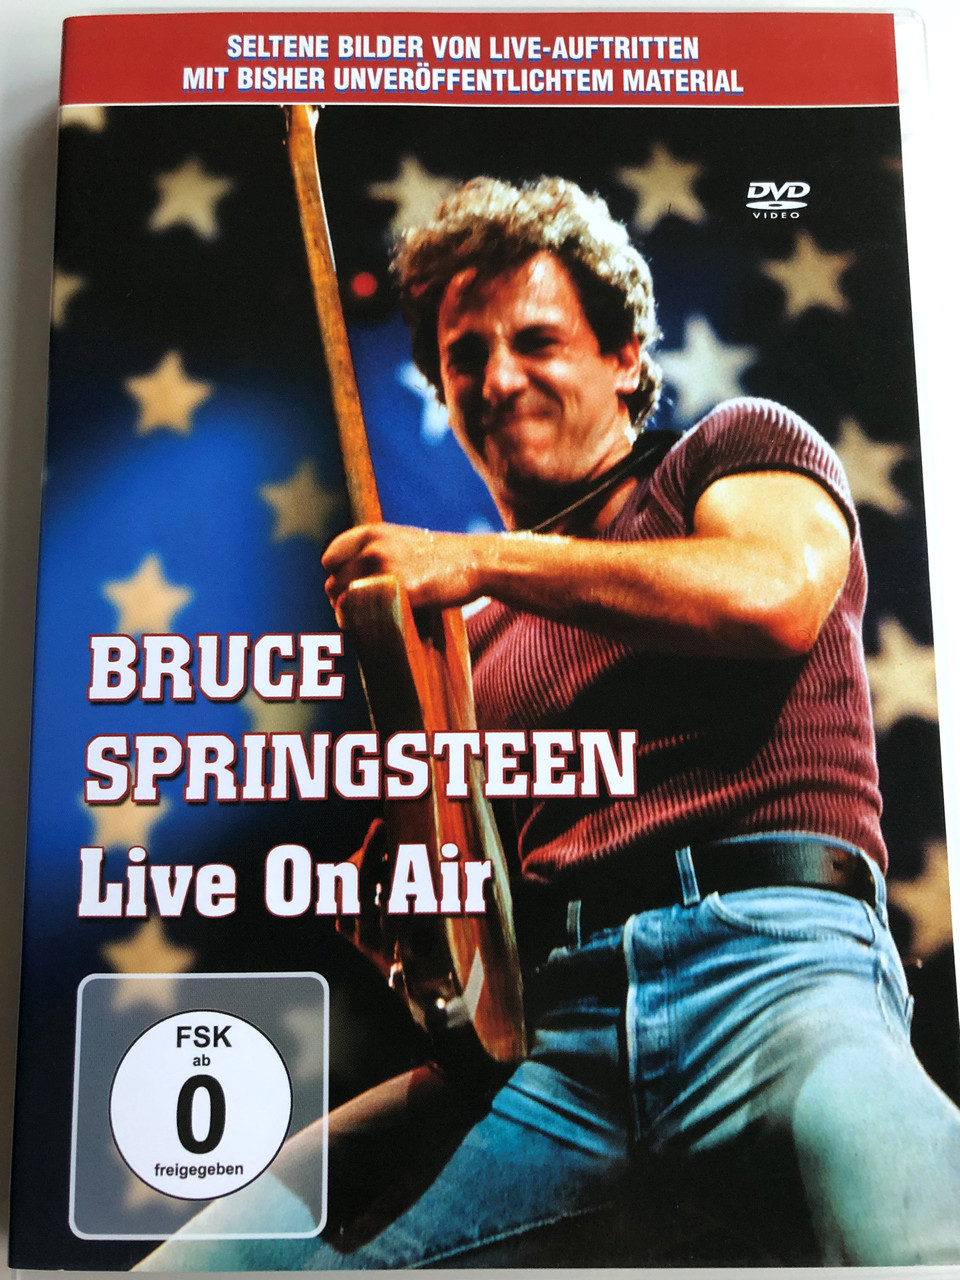 Bruce Springsteen Live On Air DVD 2005 Seltene Bilder von Live-Auftritten /  A selection of the